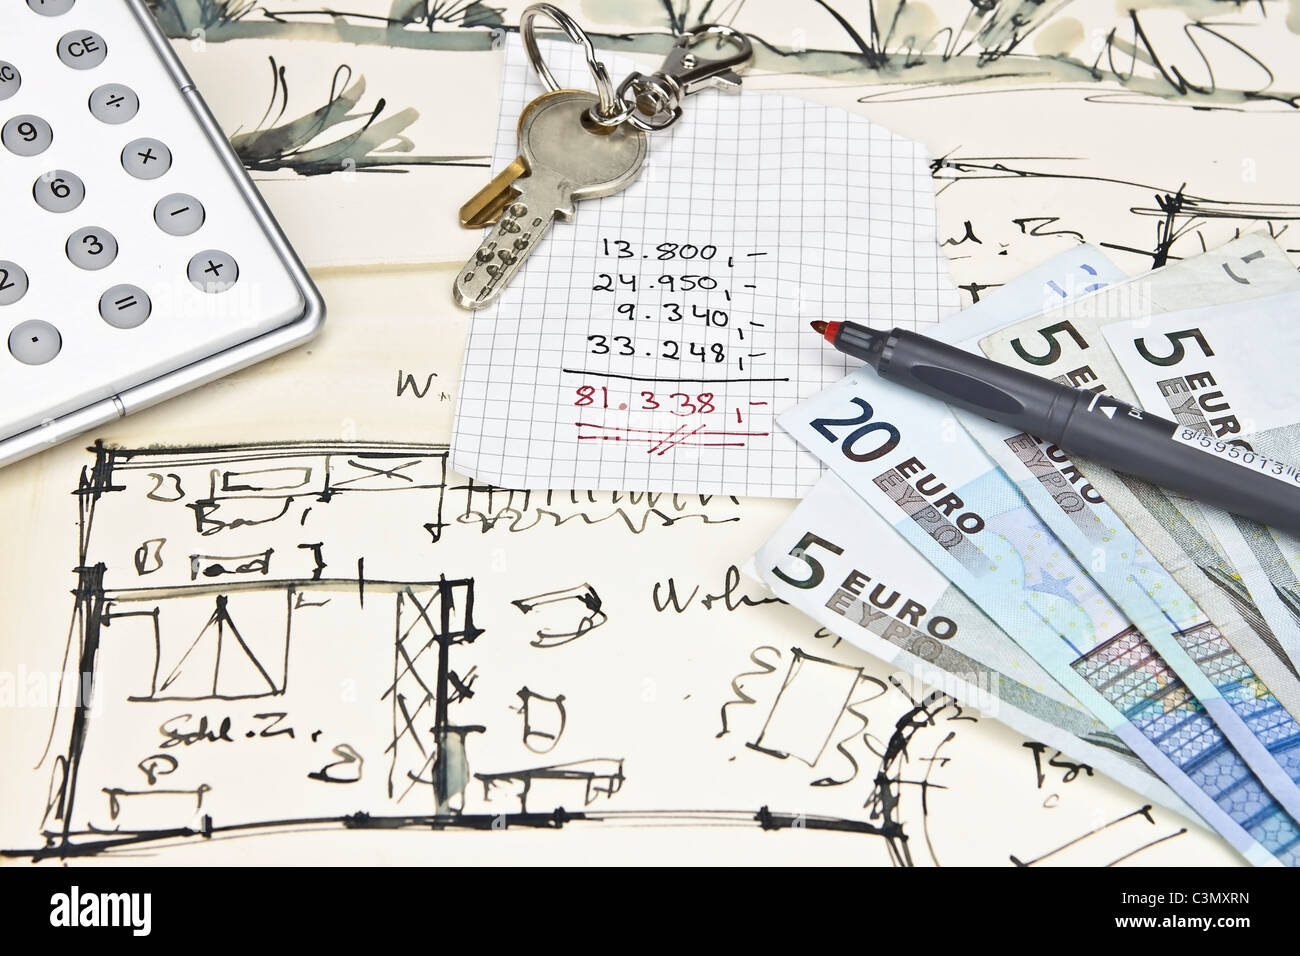 Le plan d'une maison avec des clés, une calculatrice, un crayon, de l'argent et un calcul des dépenses Banque D'Images